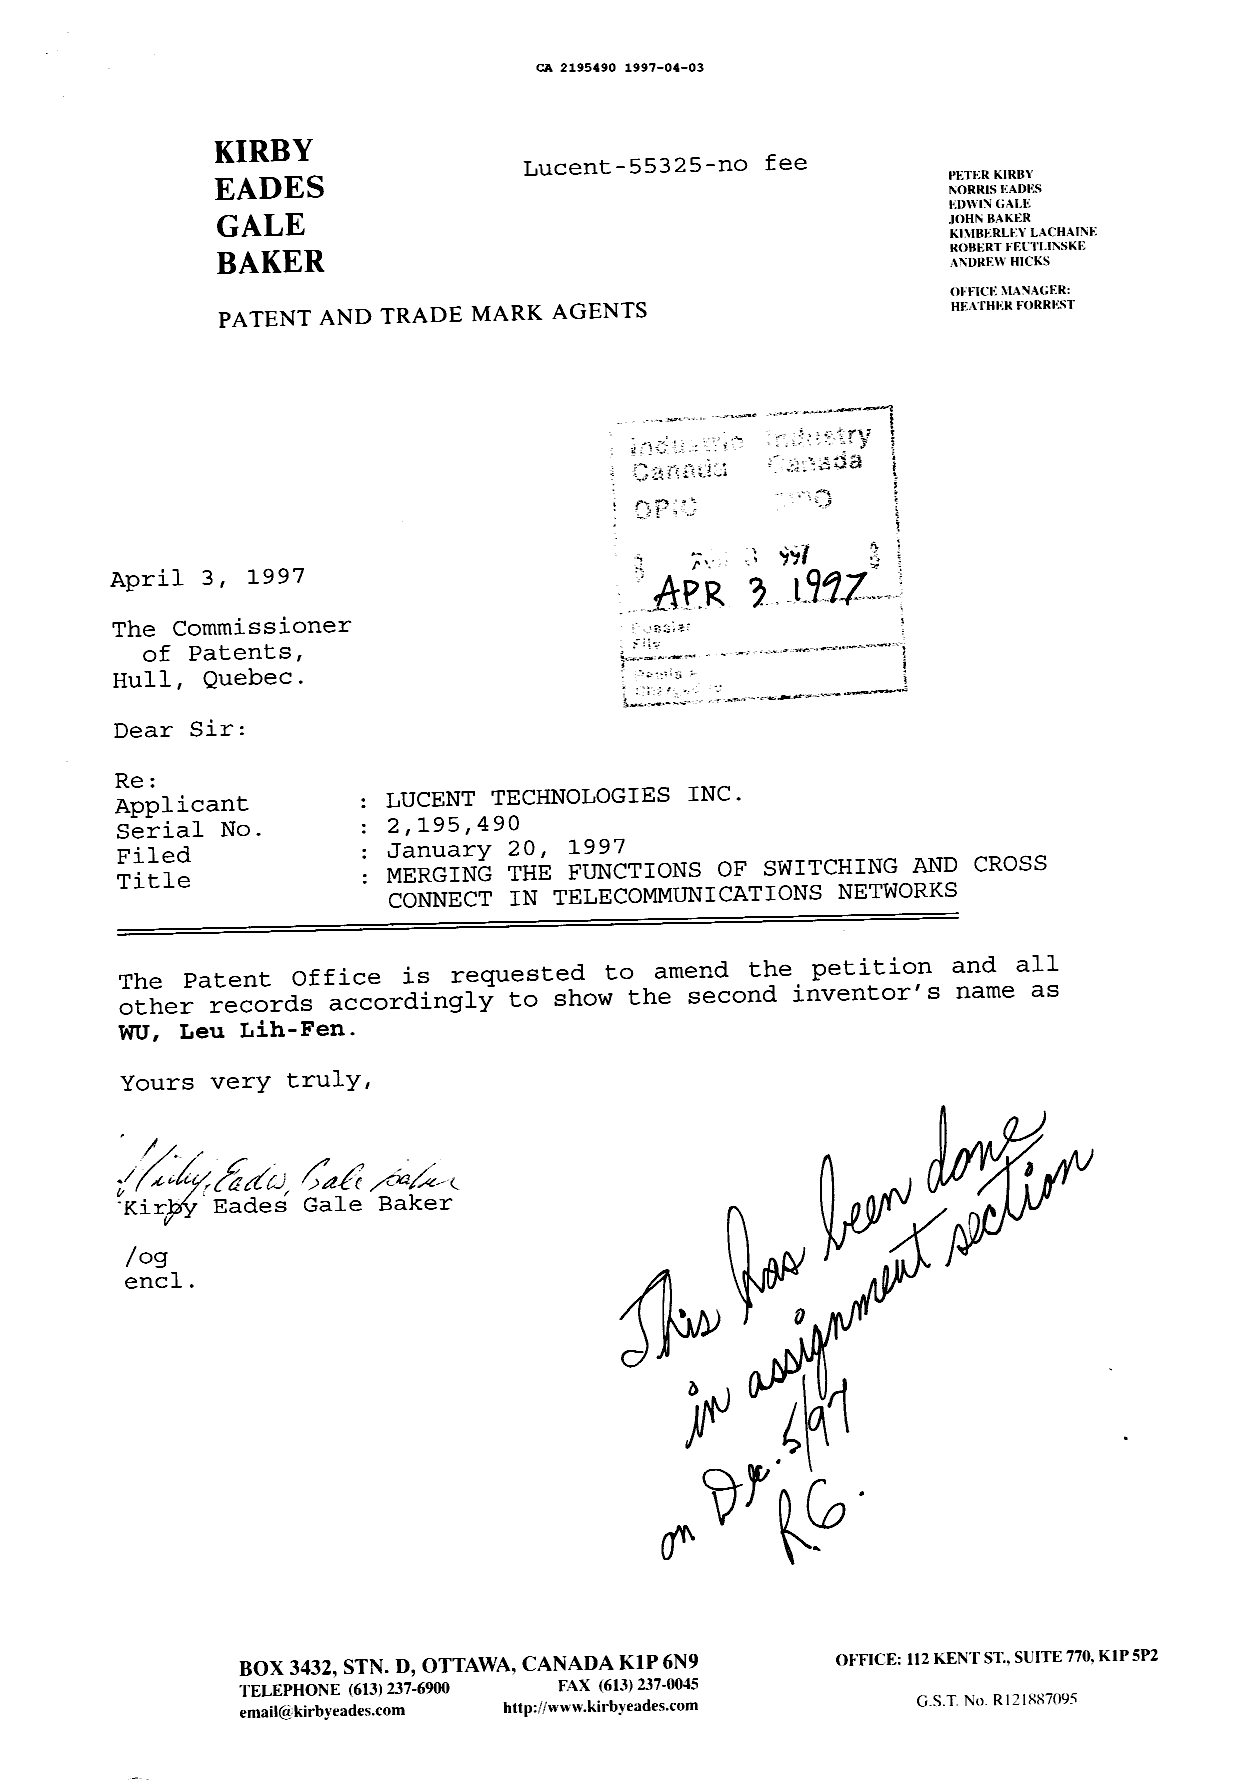 Document de brevet canadien 2195490. Correspondance reliée aux formalités 19970403. Image 1 de 1